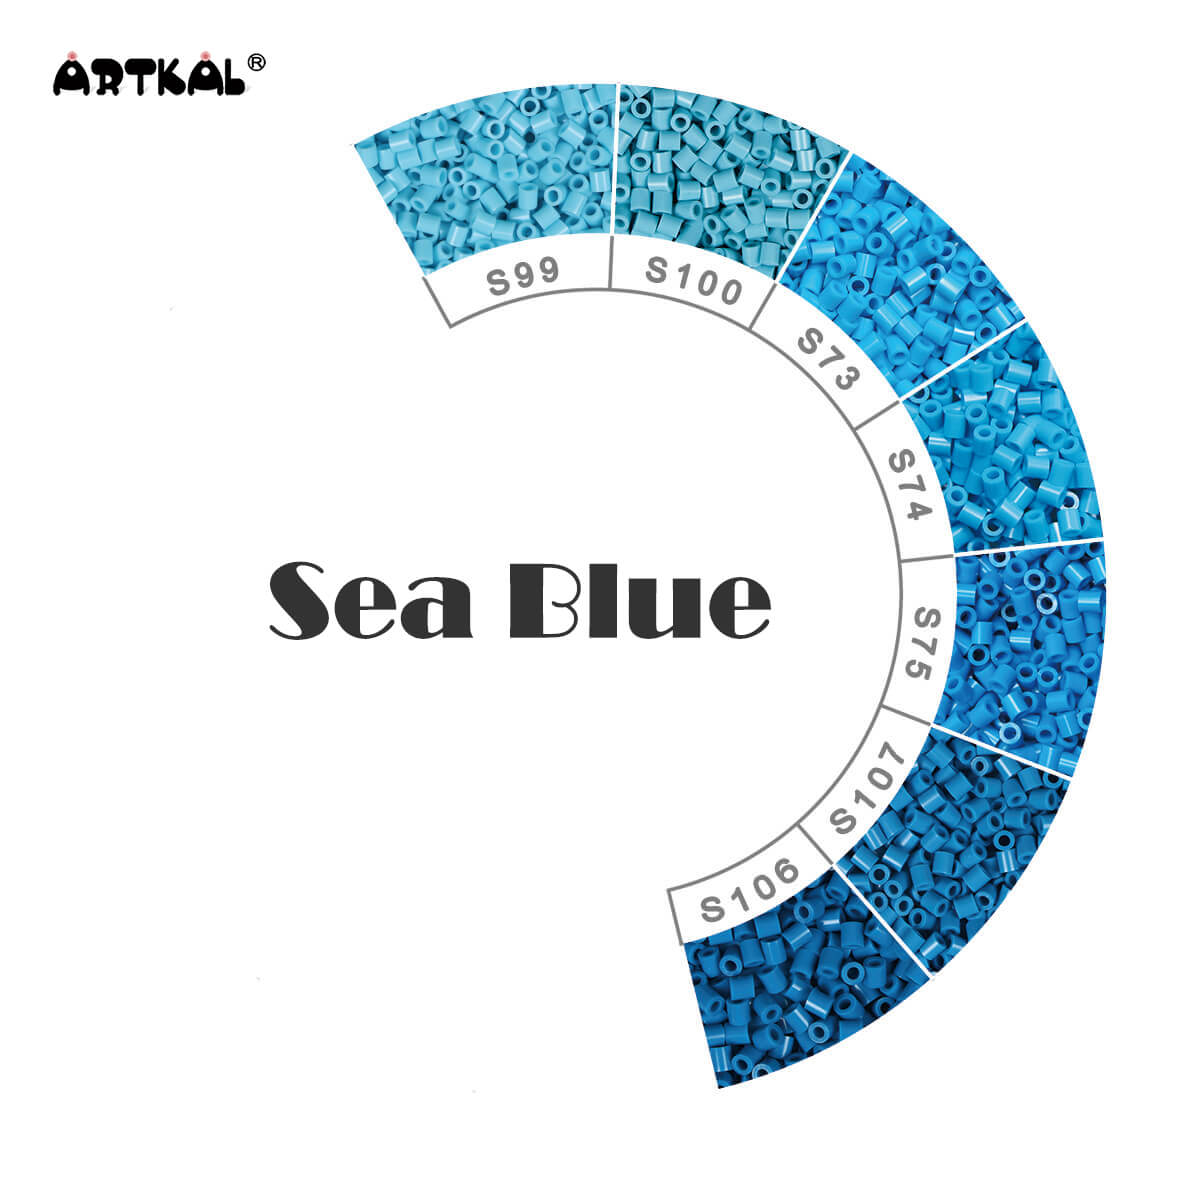 Sea Blue-Midi 1000 비즈 싱글 팩